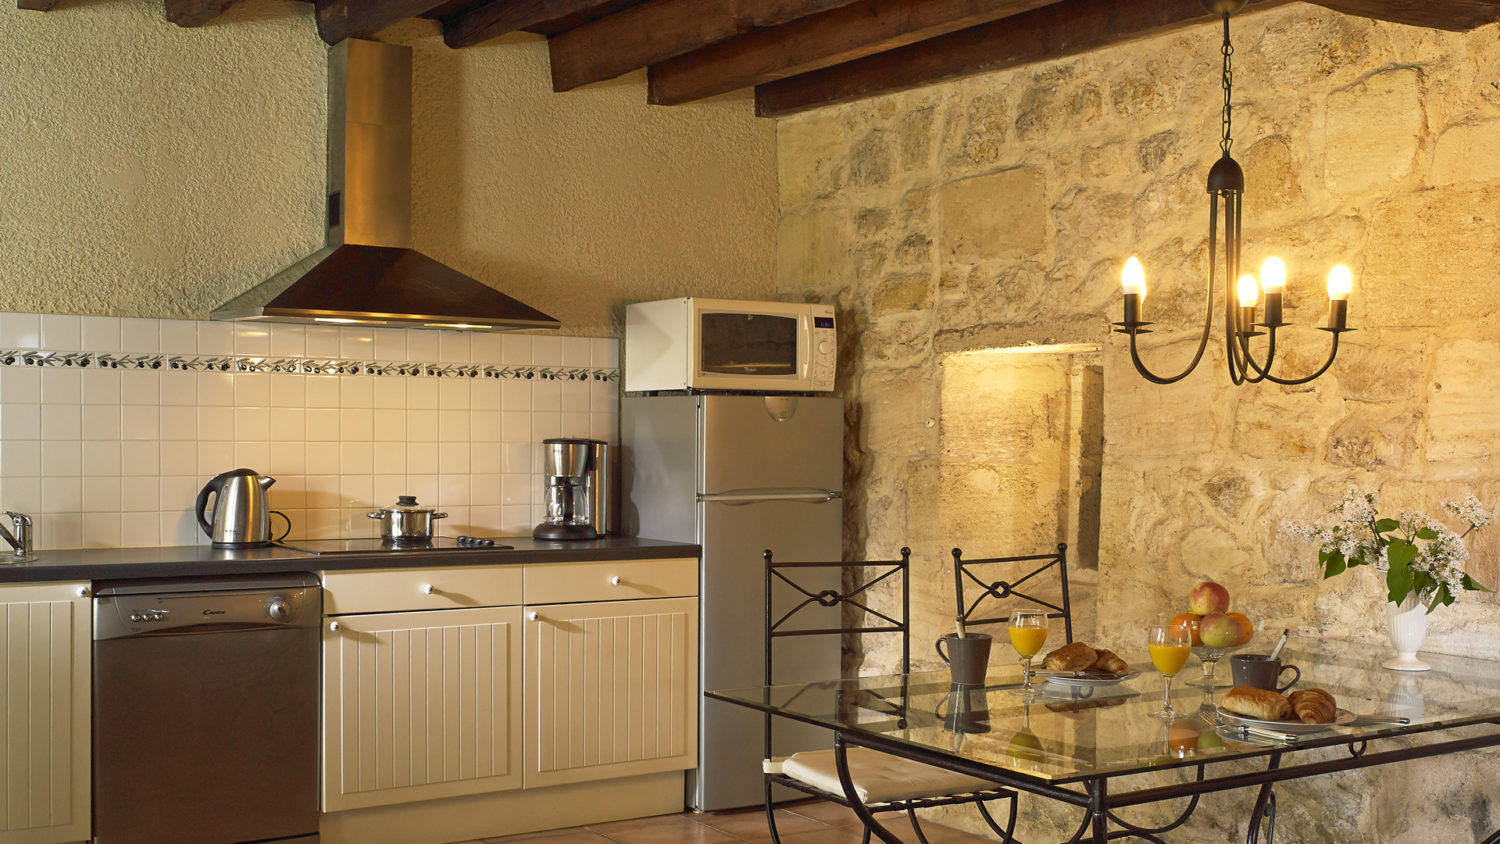 Cottage "Margaux" (2 pers) dining/kitchen area with fridge/freezer + dishwasher